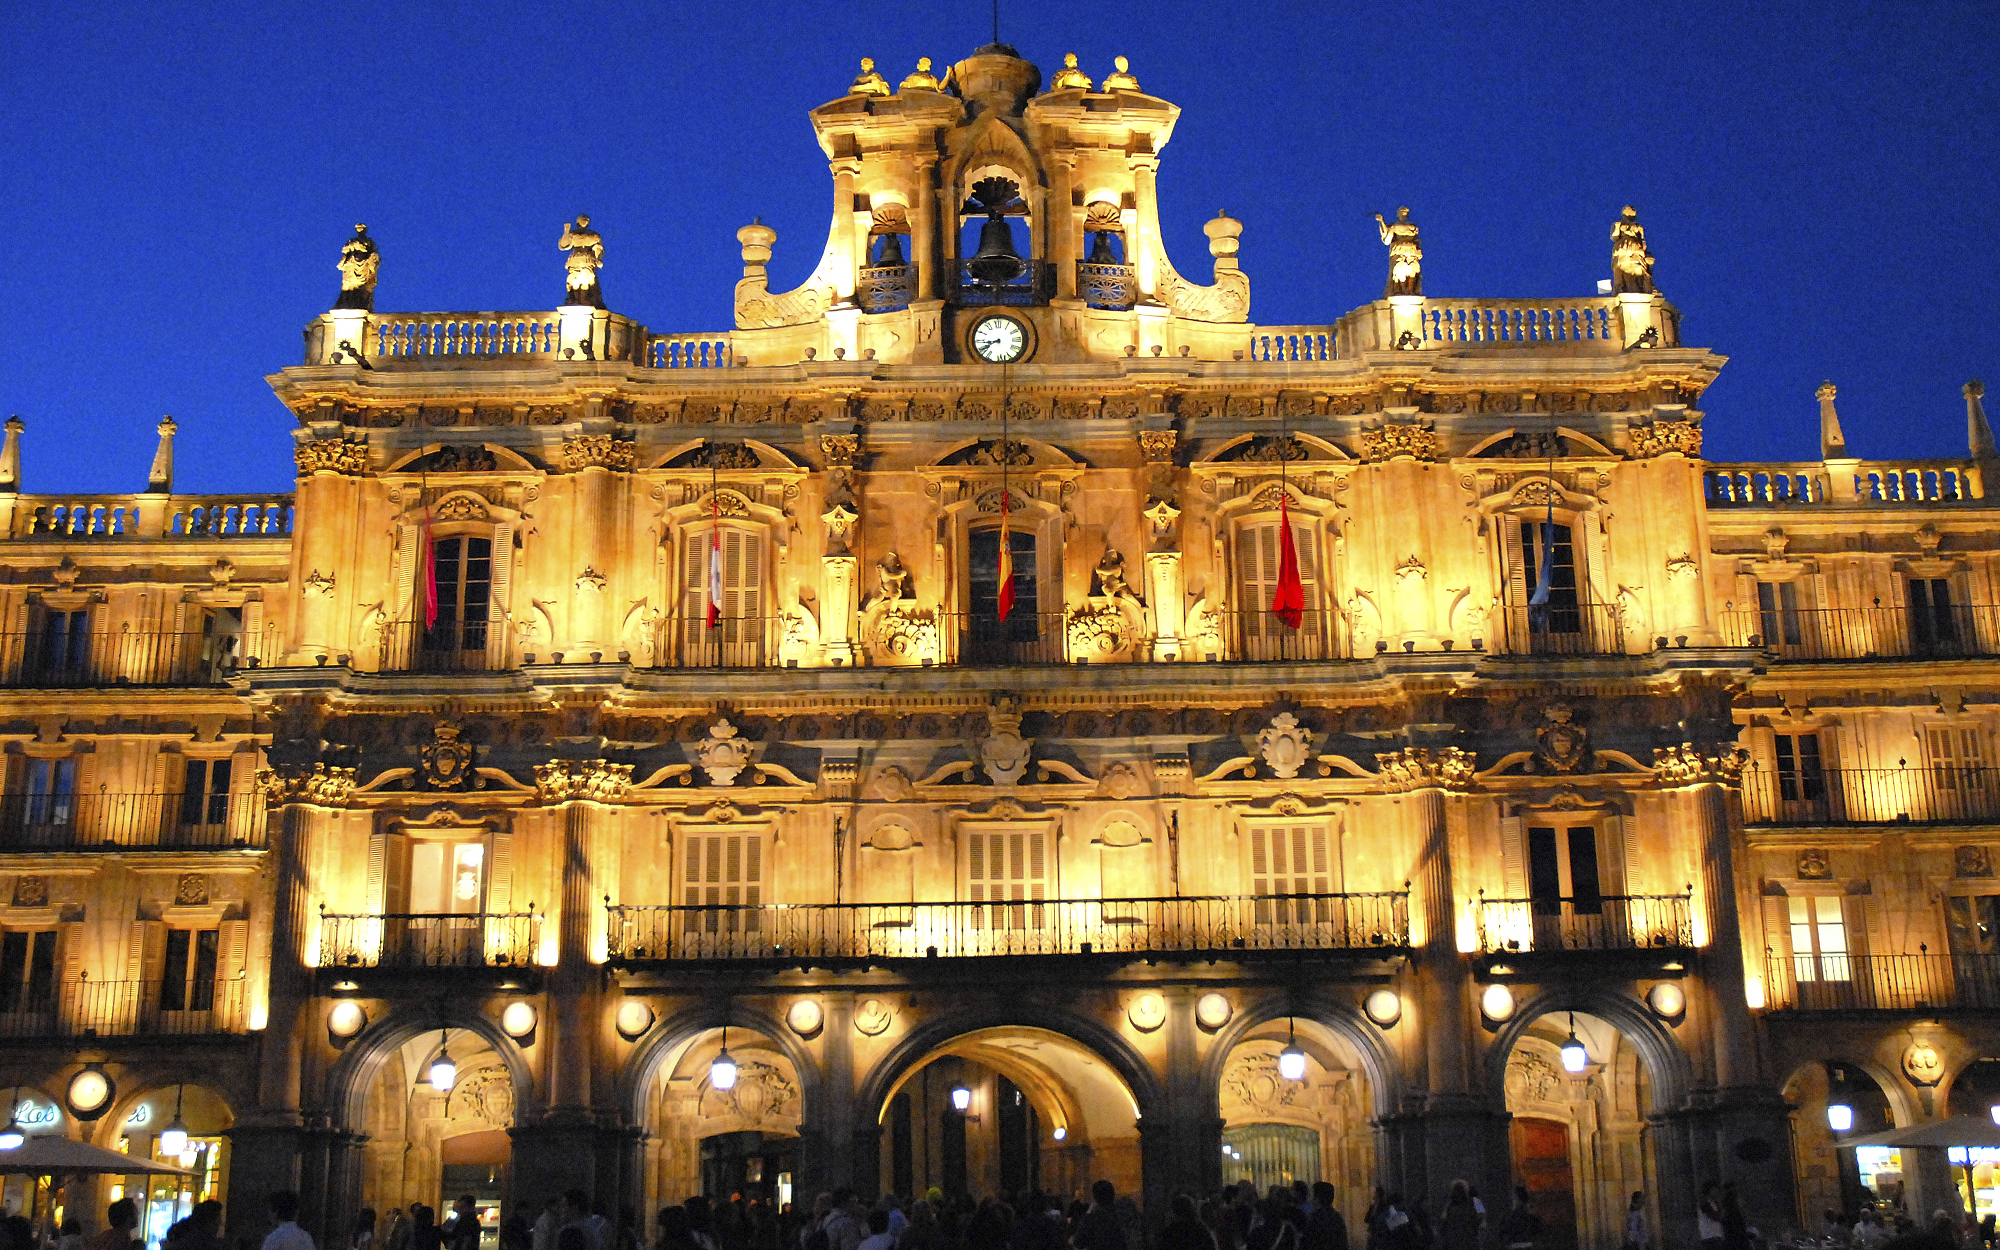 Ayuntamiento de Salamanca ©Aly Jentges